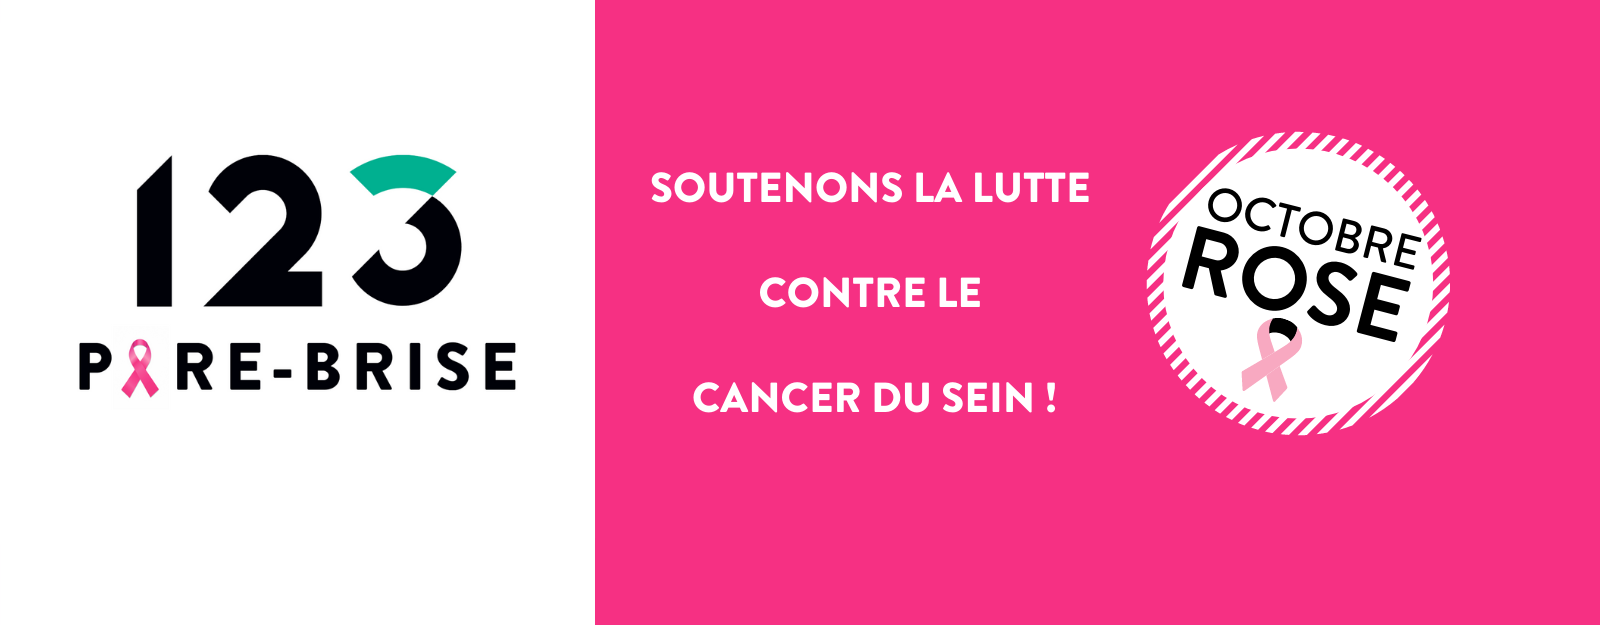 Octobre Rose : 123 Pare-Brise participe au défi solidaire et fun pour la lutte contre le cancer du sein.